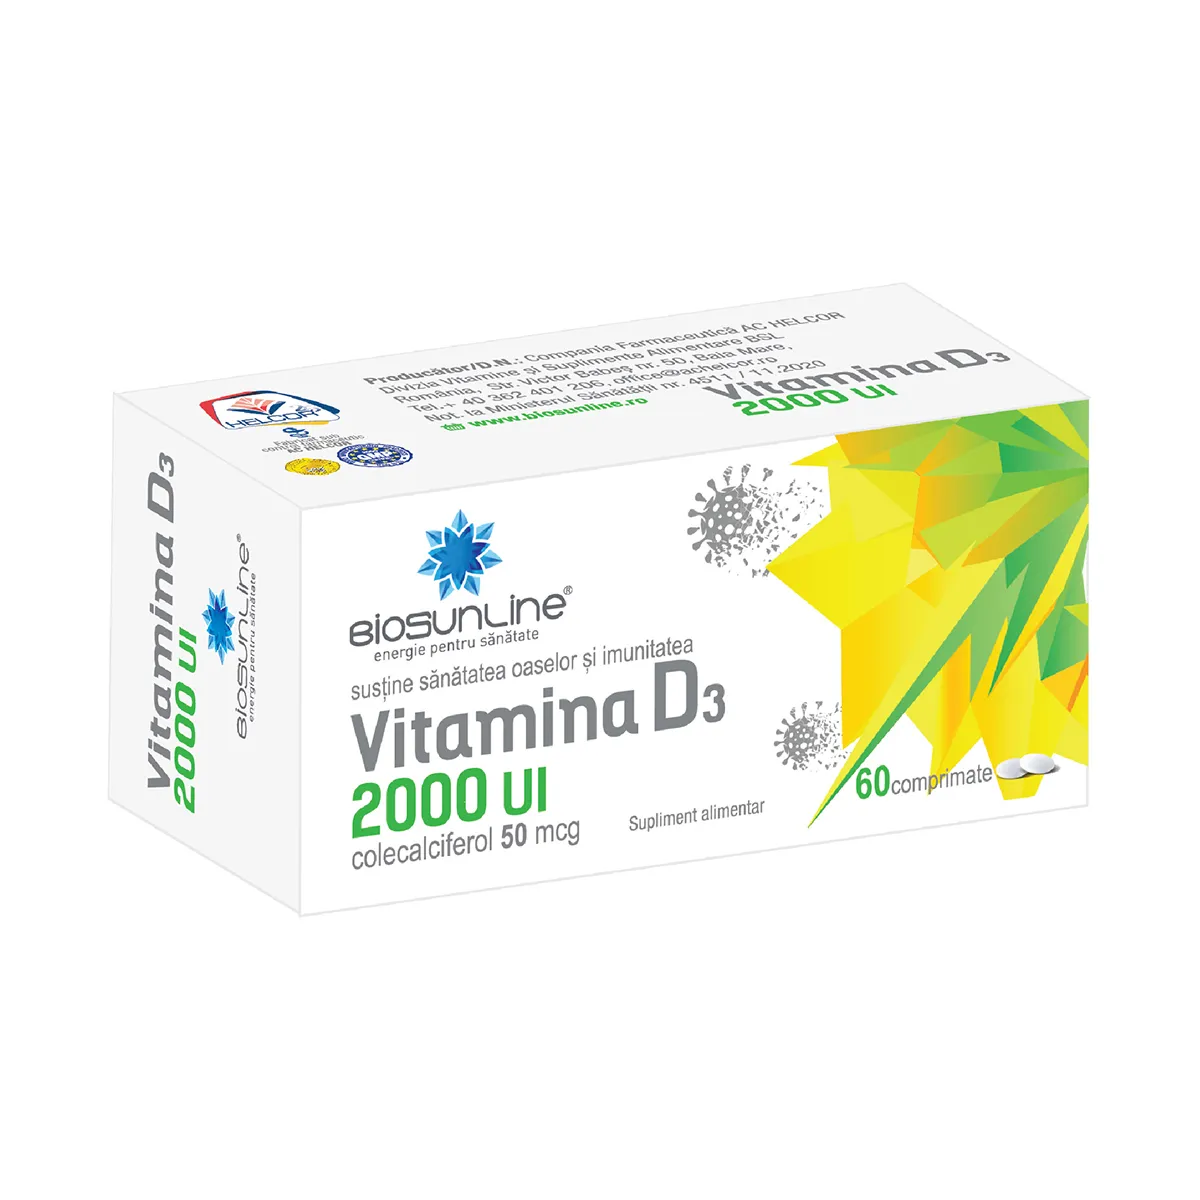 Vitamina D3 2000 UI, 60 comprimate, BioSunLine